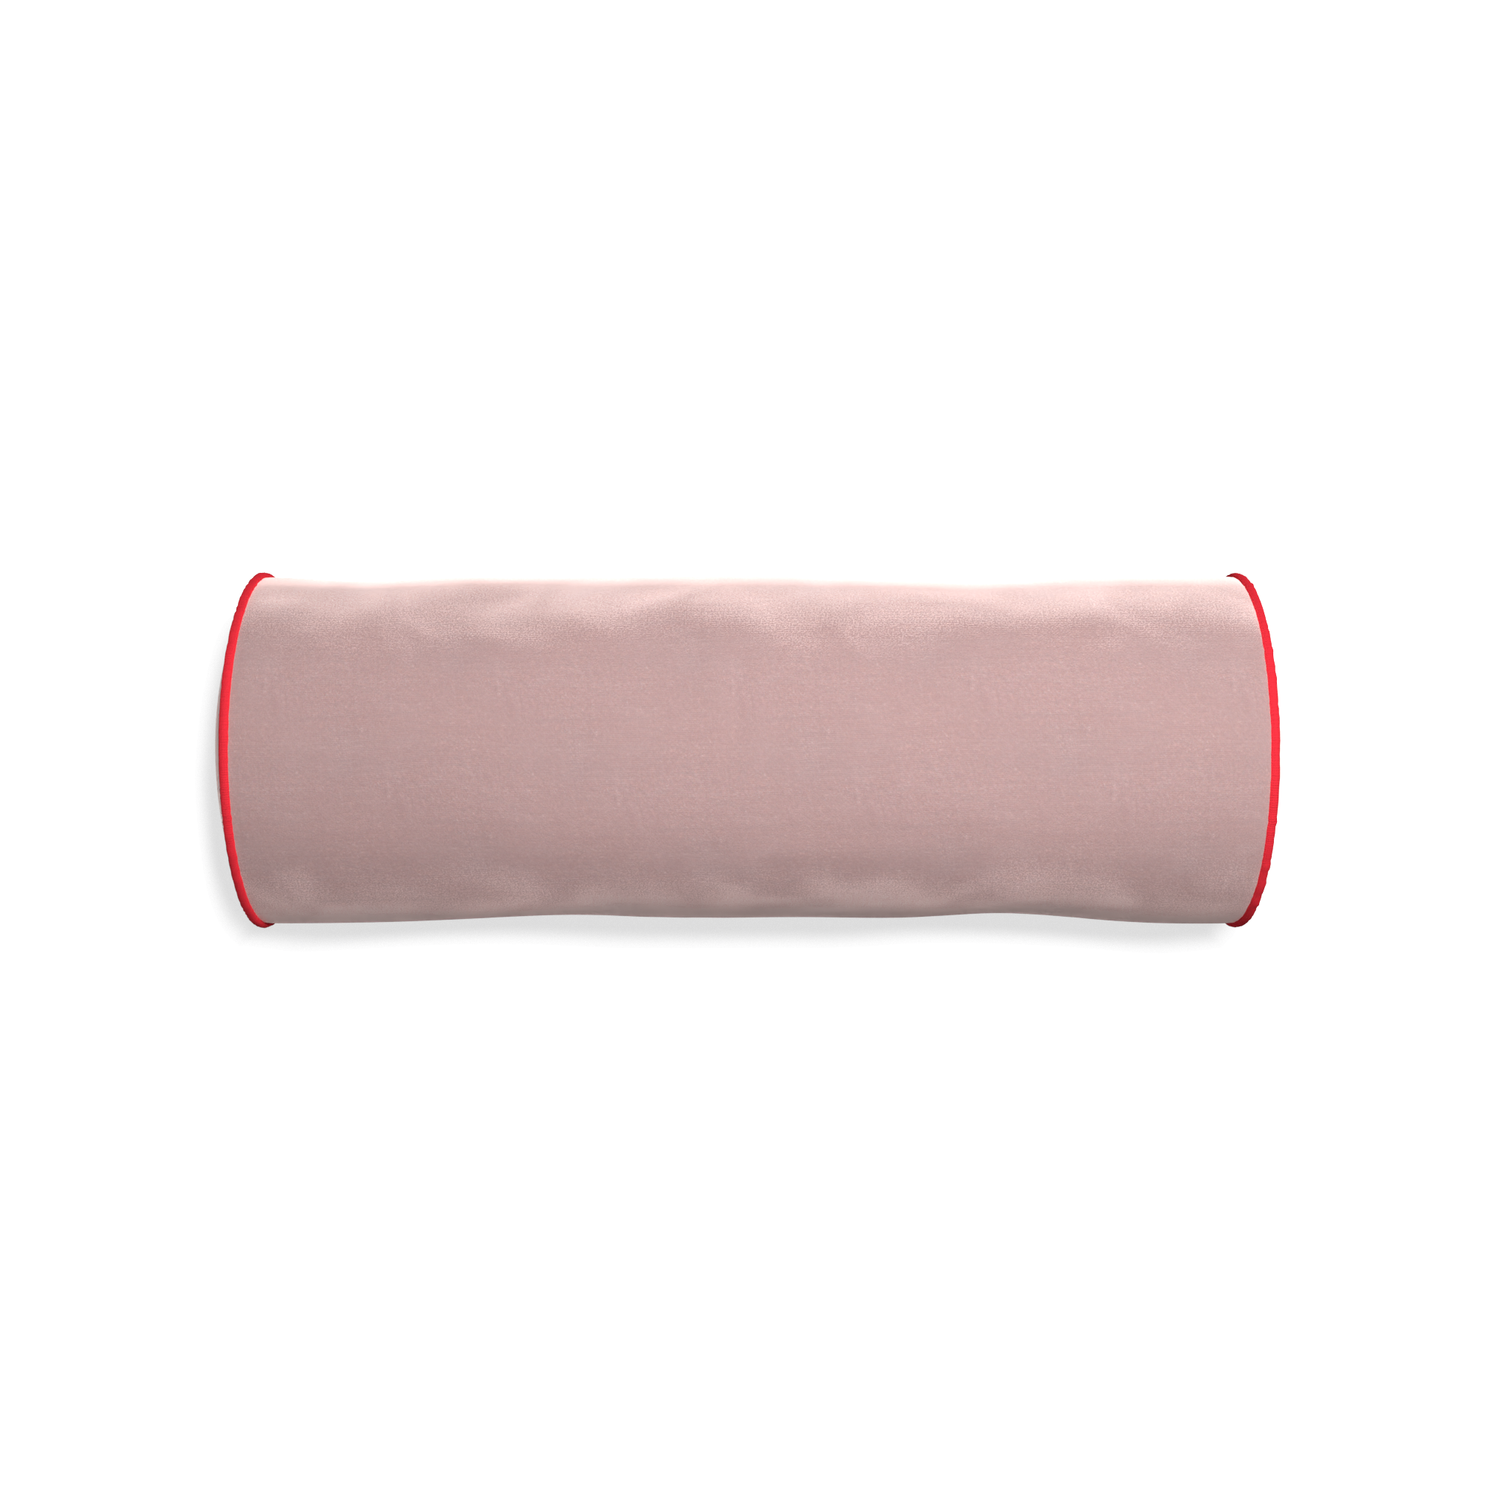 Bolster mauve velvet custom pillow with cherry piping on white background